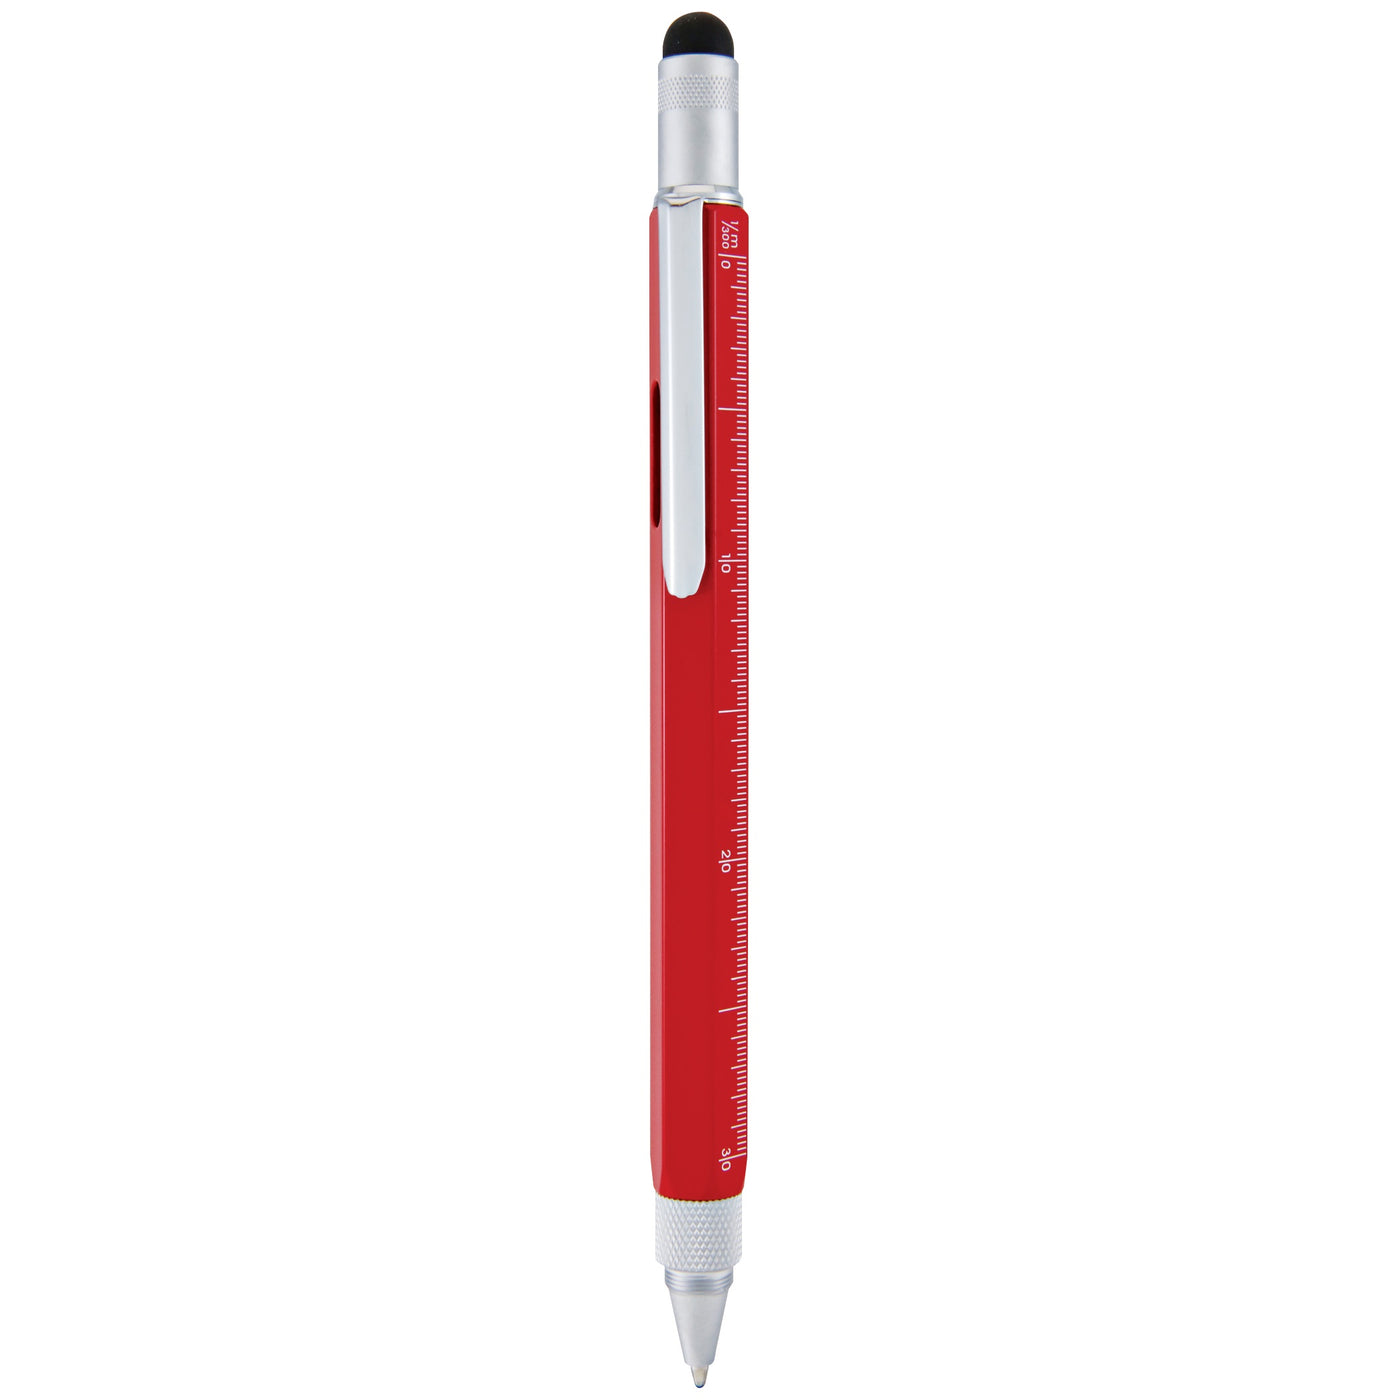 Monteverde One Touch Stylus Tool Red Ballpoint Pen